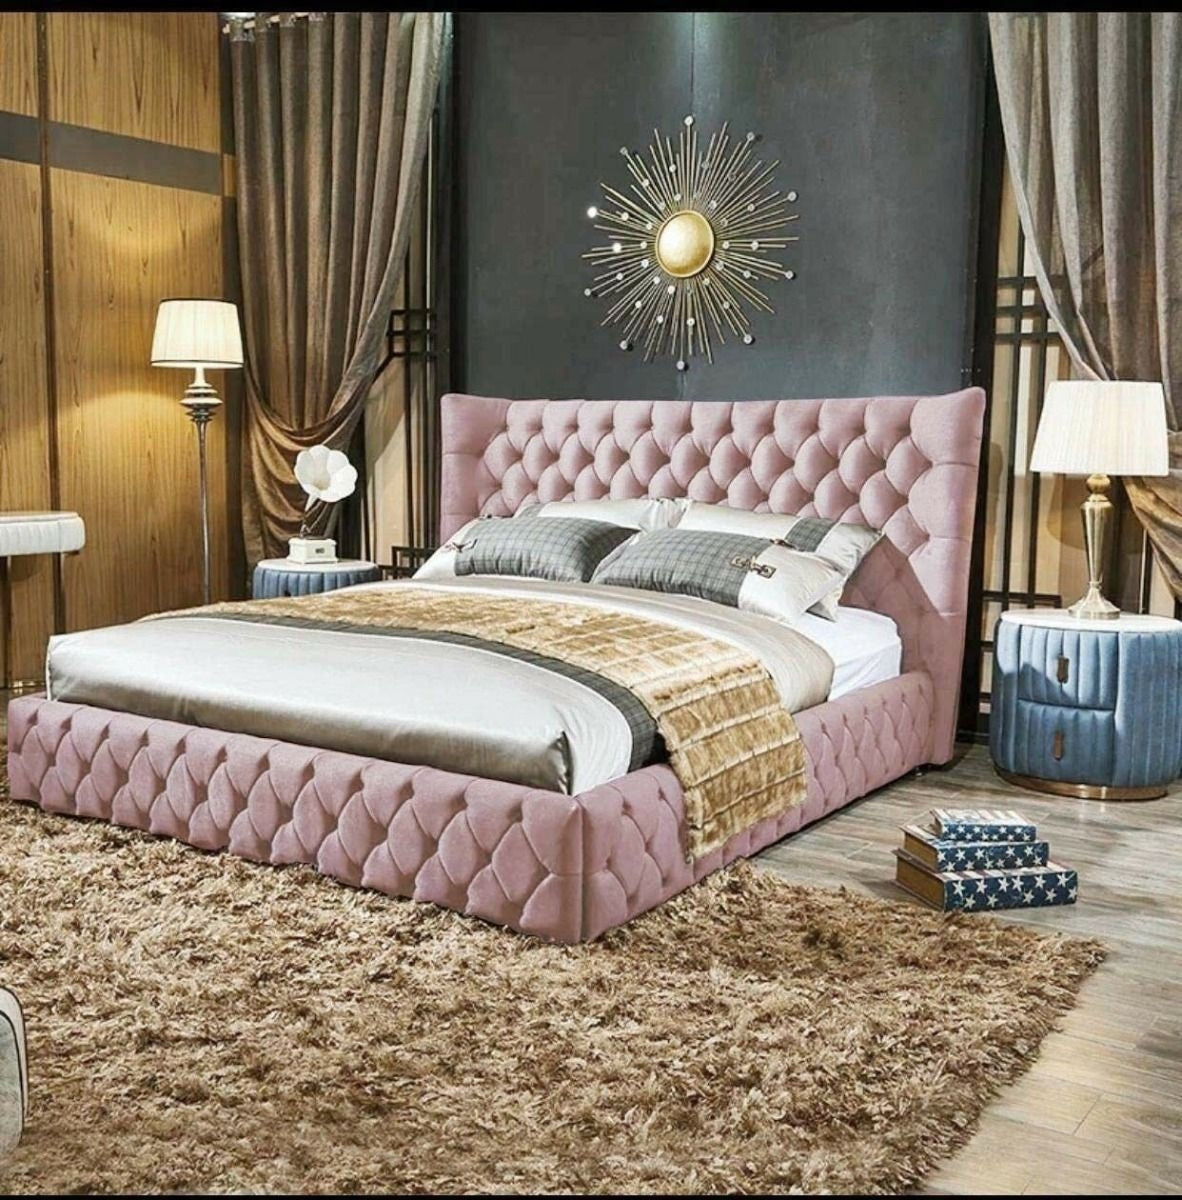 The Bespoke Isla Plush Bed- Fully Customisable with Storage Options- Velvet Monaco Range